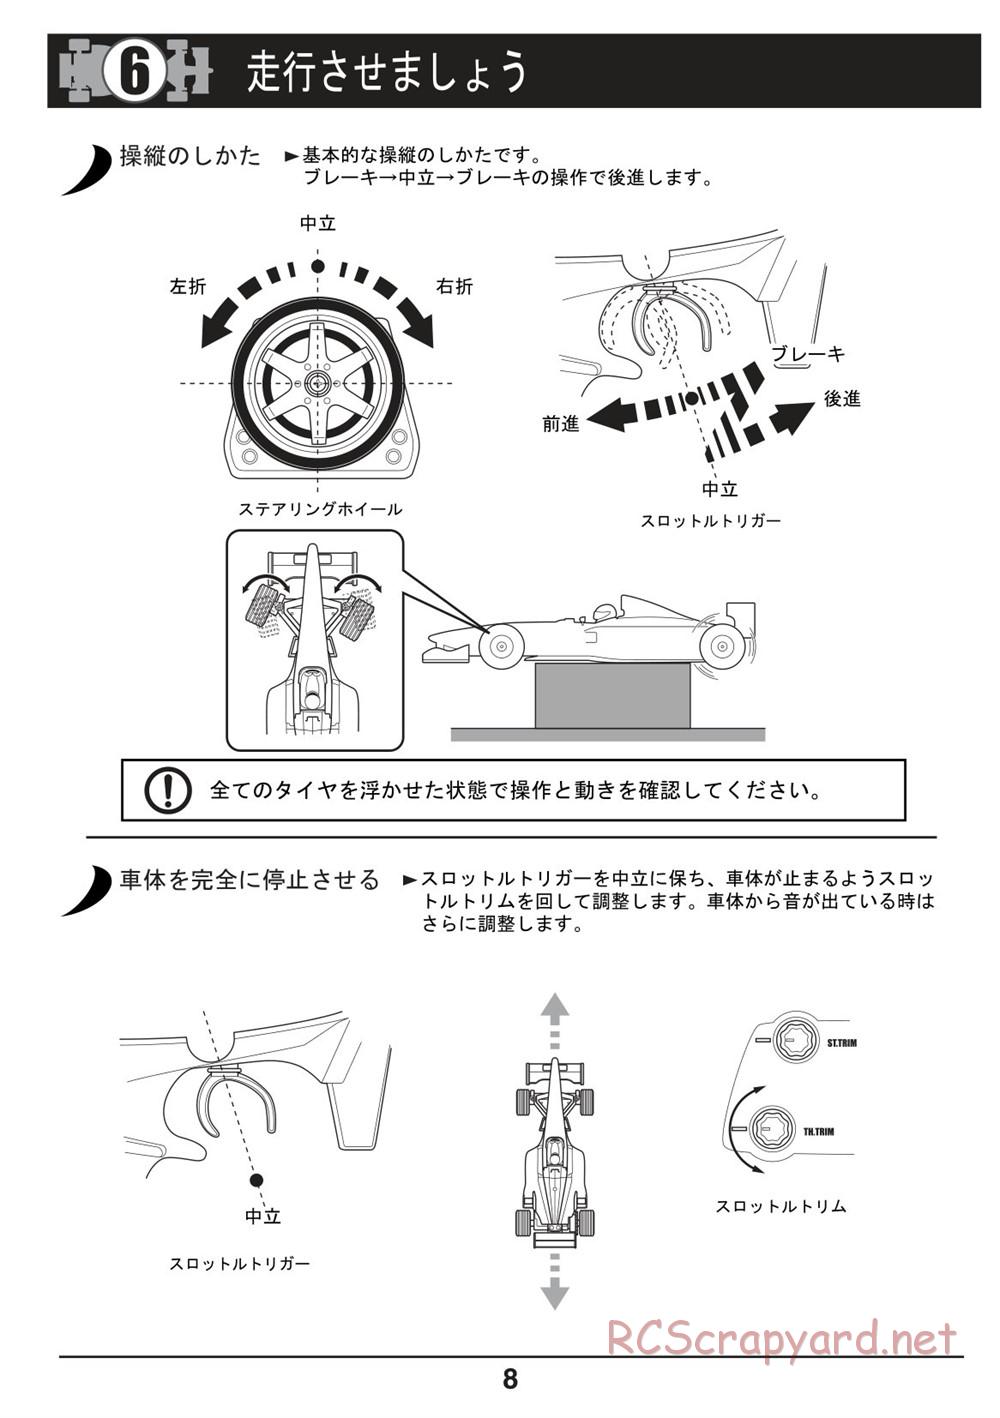 Kyosho - Mini-Z F1 - Manual - Page 8